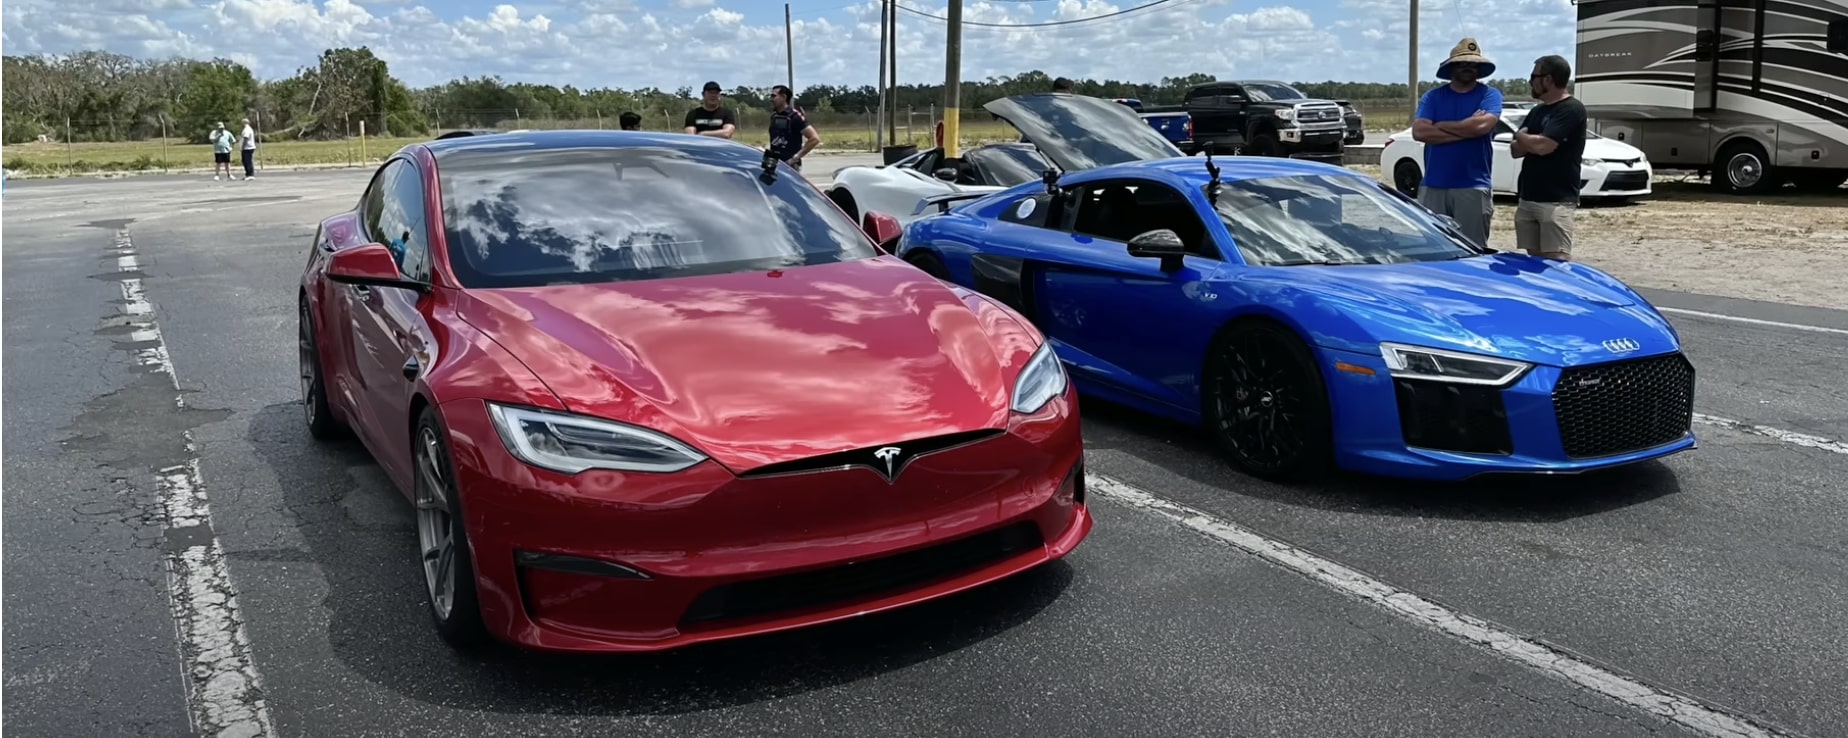 Tesla Model S Plaid faces its toughest drag race opponent yet